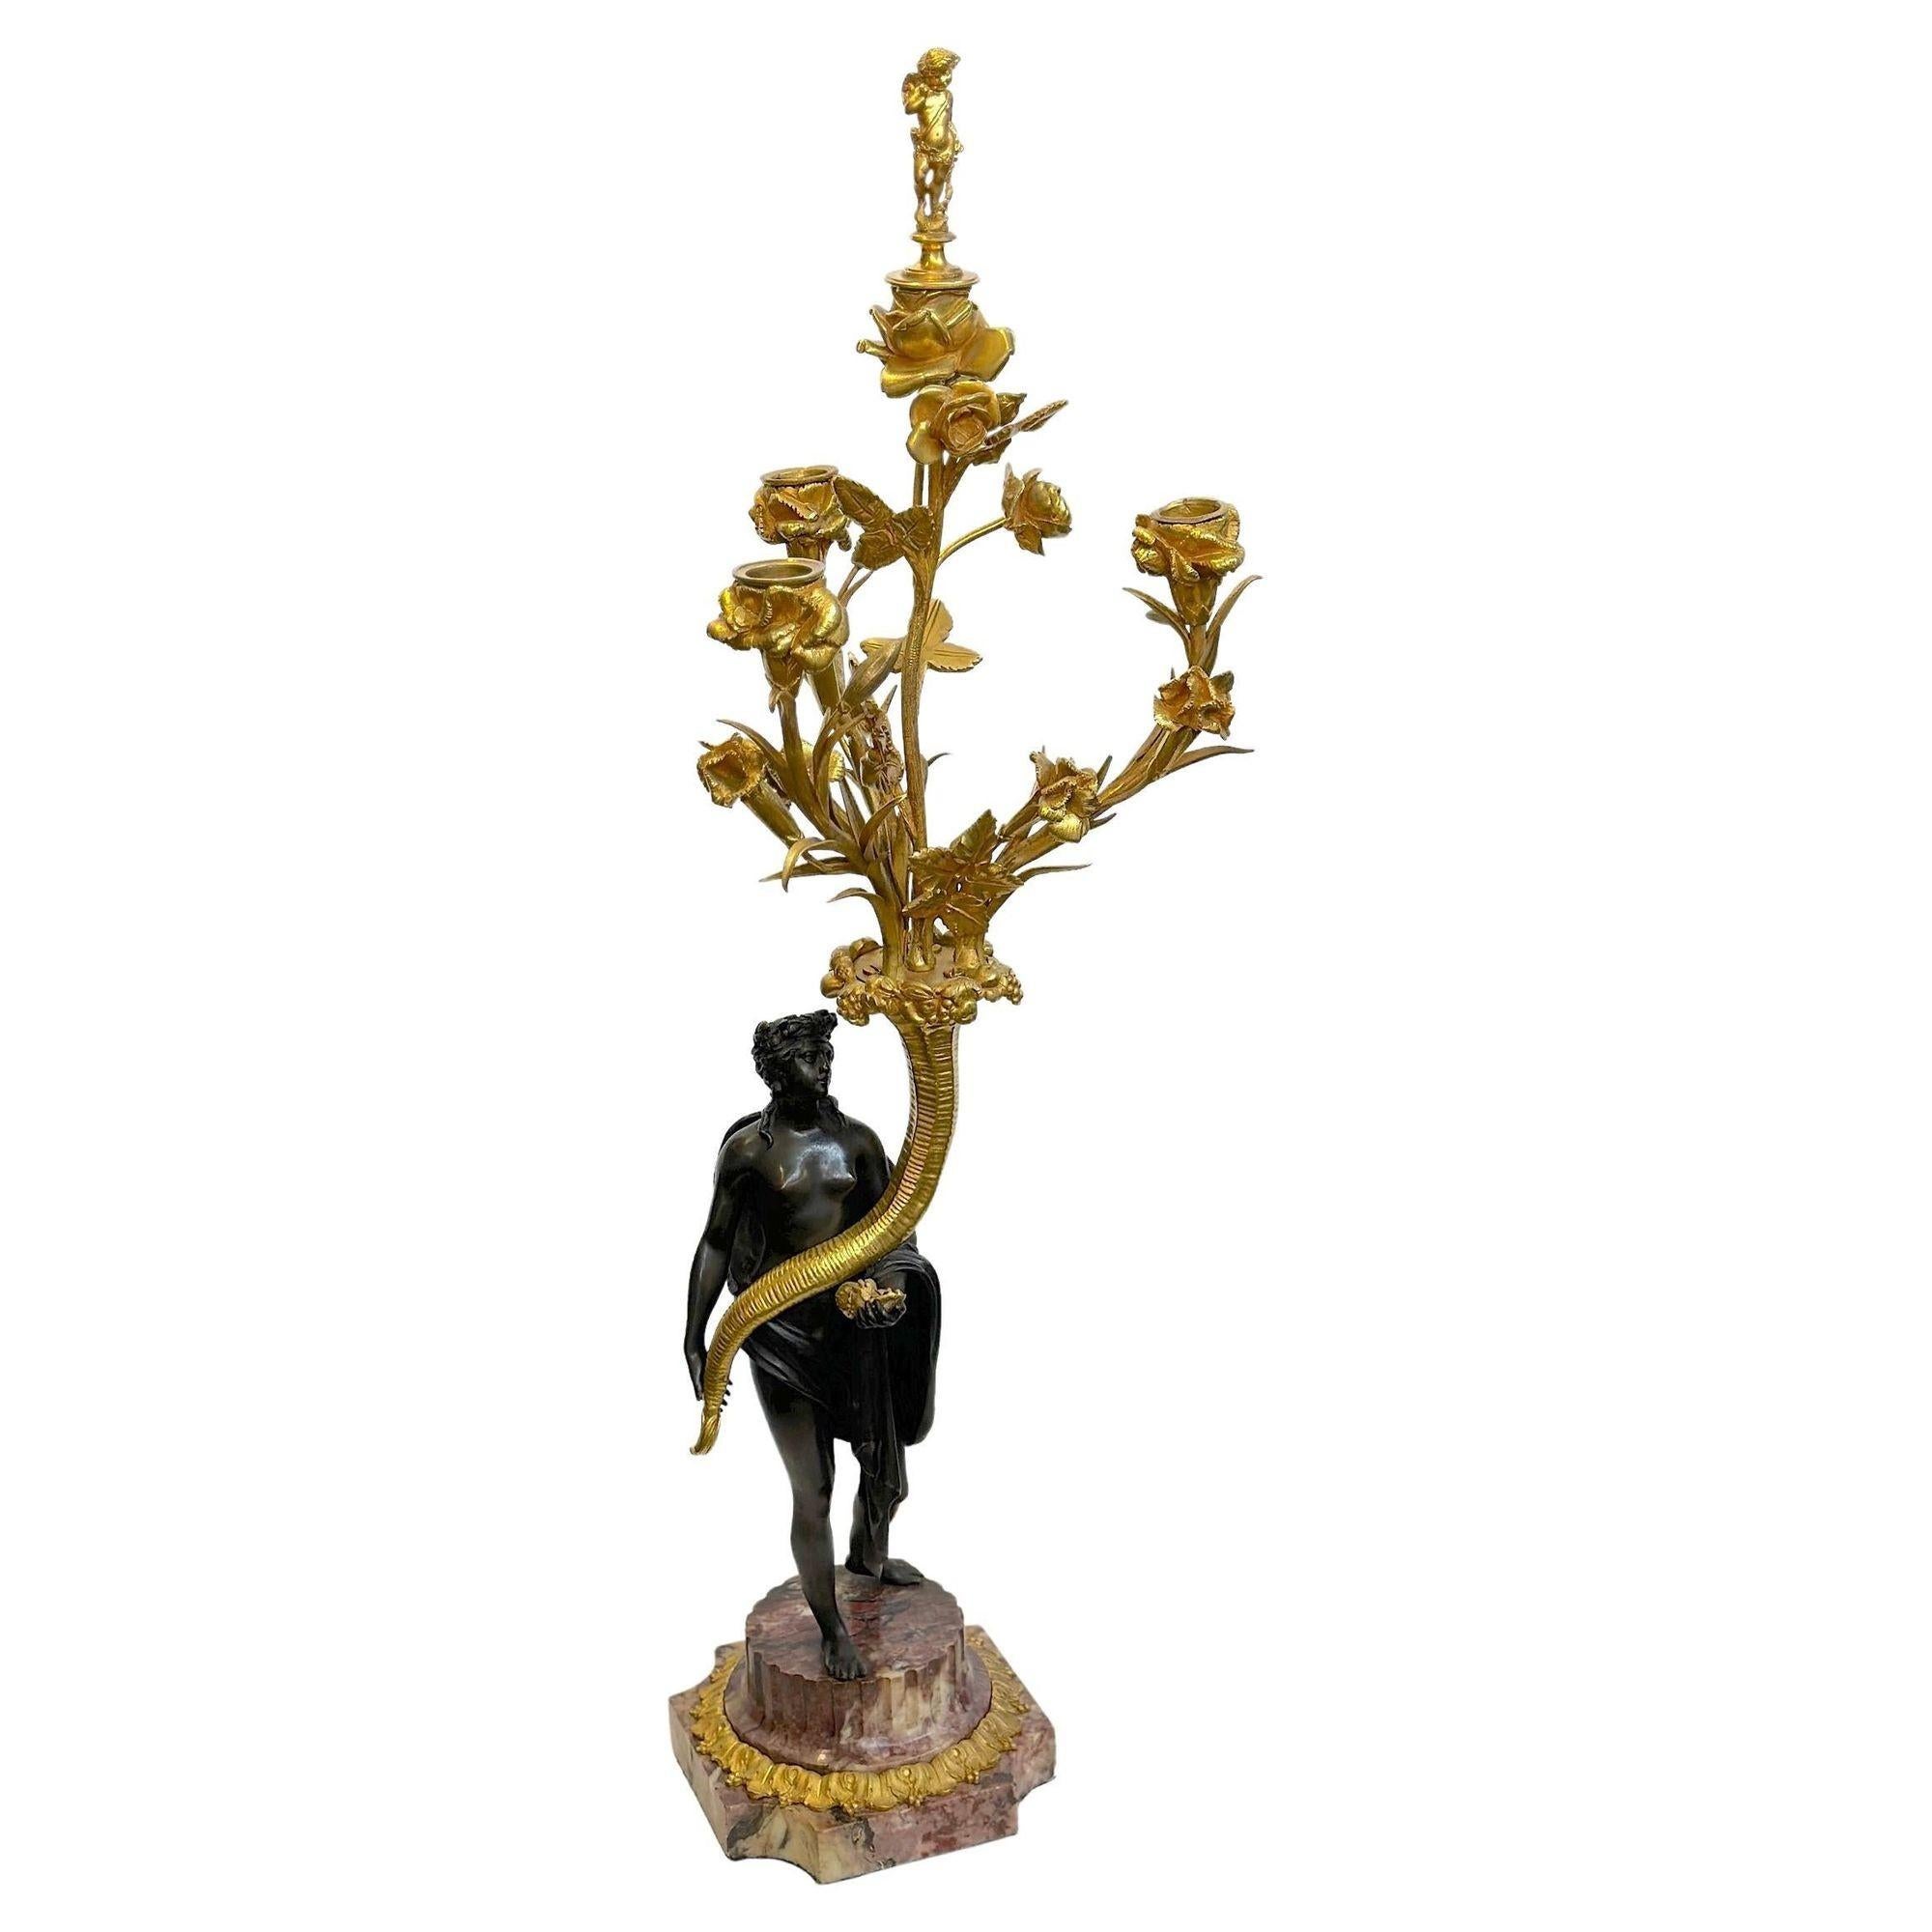 Paar patinierte und vergoldete Bronze-Figurenkandelaber Napoleon III. Die Figuren stehen jeweils auf Sockeln aus rotem Marmor und scheinen anmutig ein Füllhorn voller blühender Zweige zu halten. Zu jedem Kandelaber gehört auch ein abnehmbarer